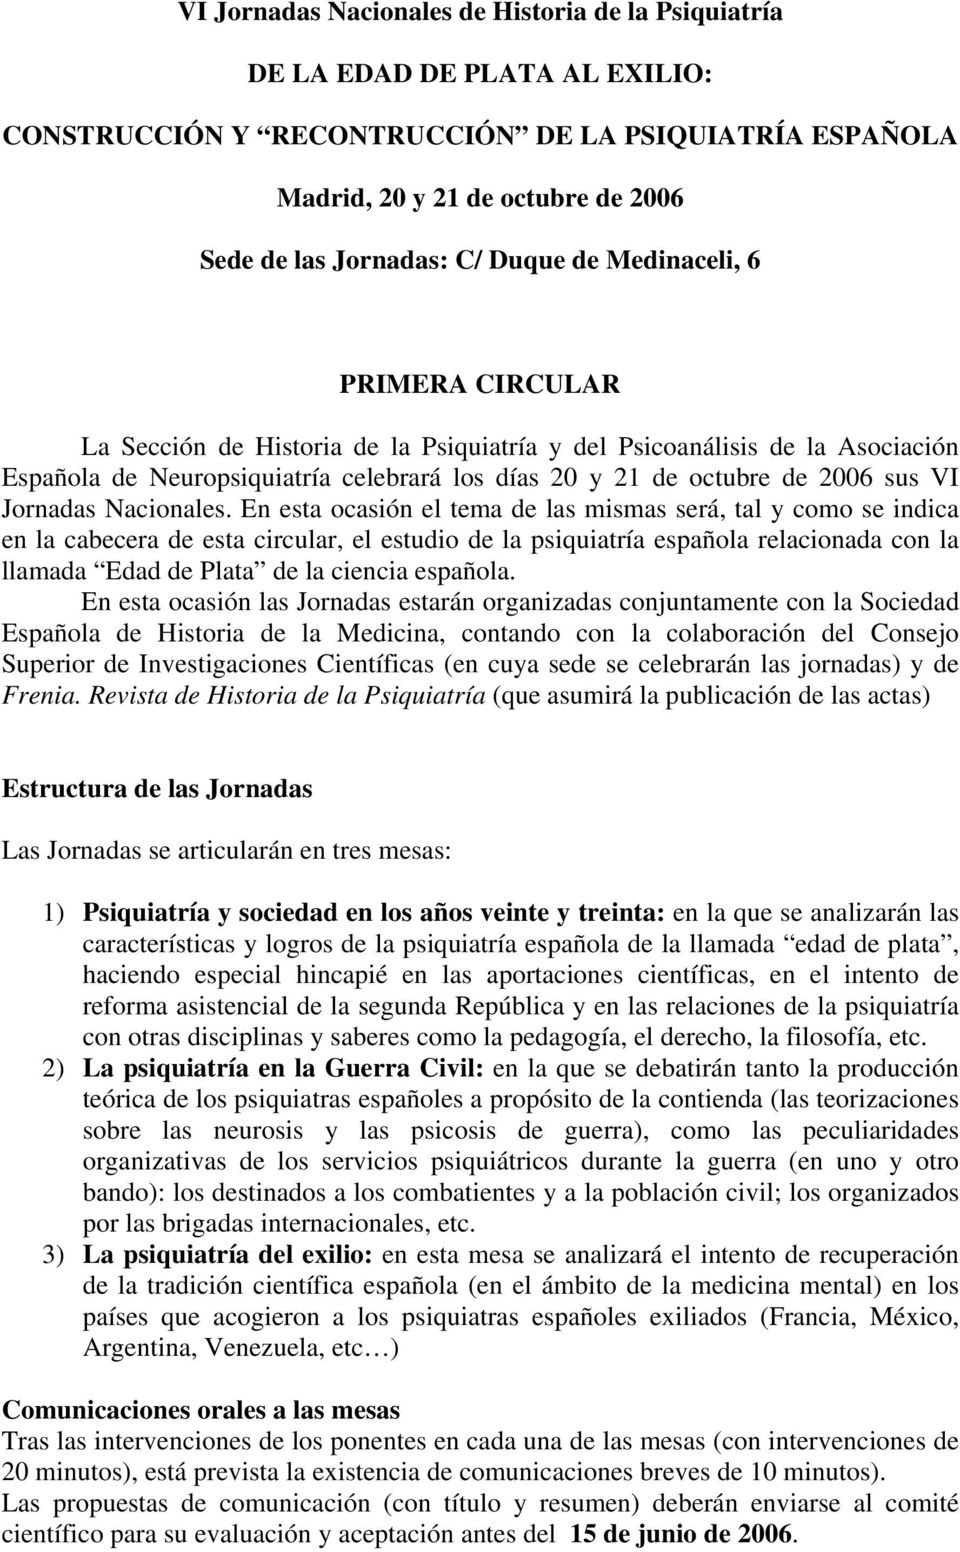 En esta ocasión el tema de las mismas será, tal y como se indica en la cabecera de esta circular, el estudio de la psiquiatría española relacionada con la llamada Edad de Plata de la ciencia española.